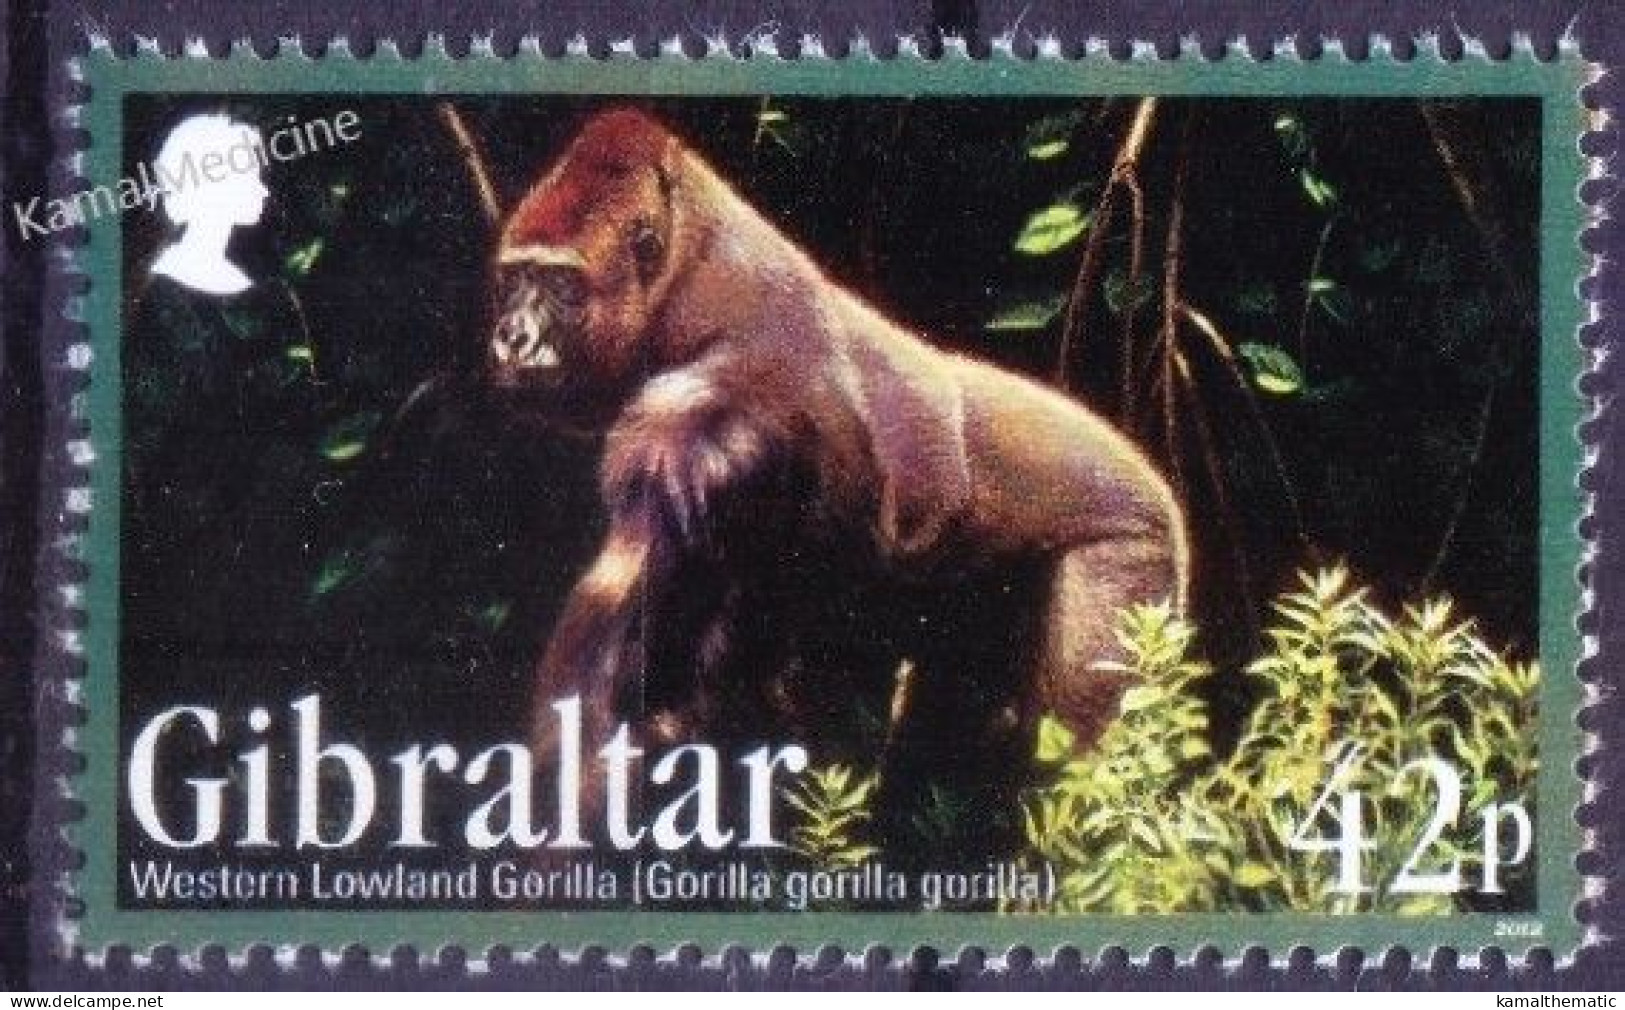 Gibraltar 2012 MNH, Western Lowland Gorilla, Monkeys Wild Animals - Gorilla's